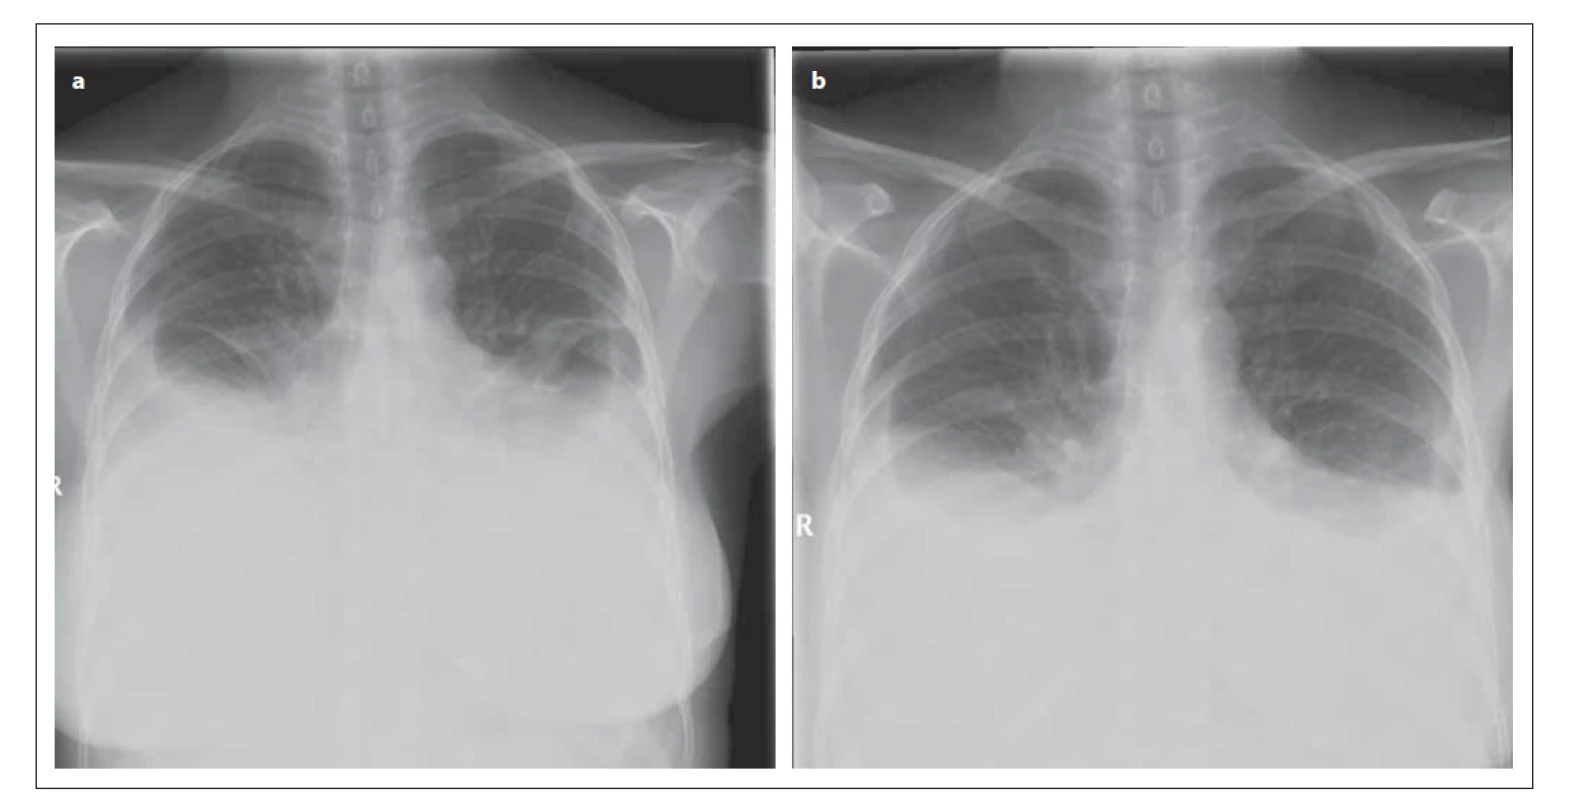 Rentgenový snímek hrudníku pacientky (a) 9. 2. 2012 (předozadní projekce) – je patný oboustranný fl uidothorax
ventrálně po 3. žebro; srdeční stín je nehodnotitelný; mediastinum není rozšířeno. (b) 15. 2. 2012 (předozadní
projekce) – je patrná regrese oboustranného fl uidothoraxu, dosahuje ventrálně po 4. žebro; srdeční stín není
hodnotitelný; mediastinum není rozšířeno.